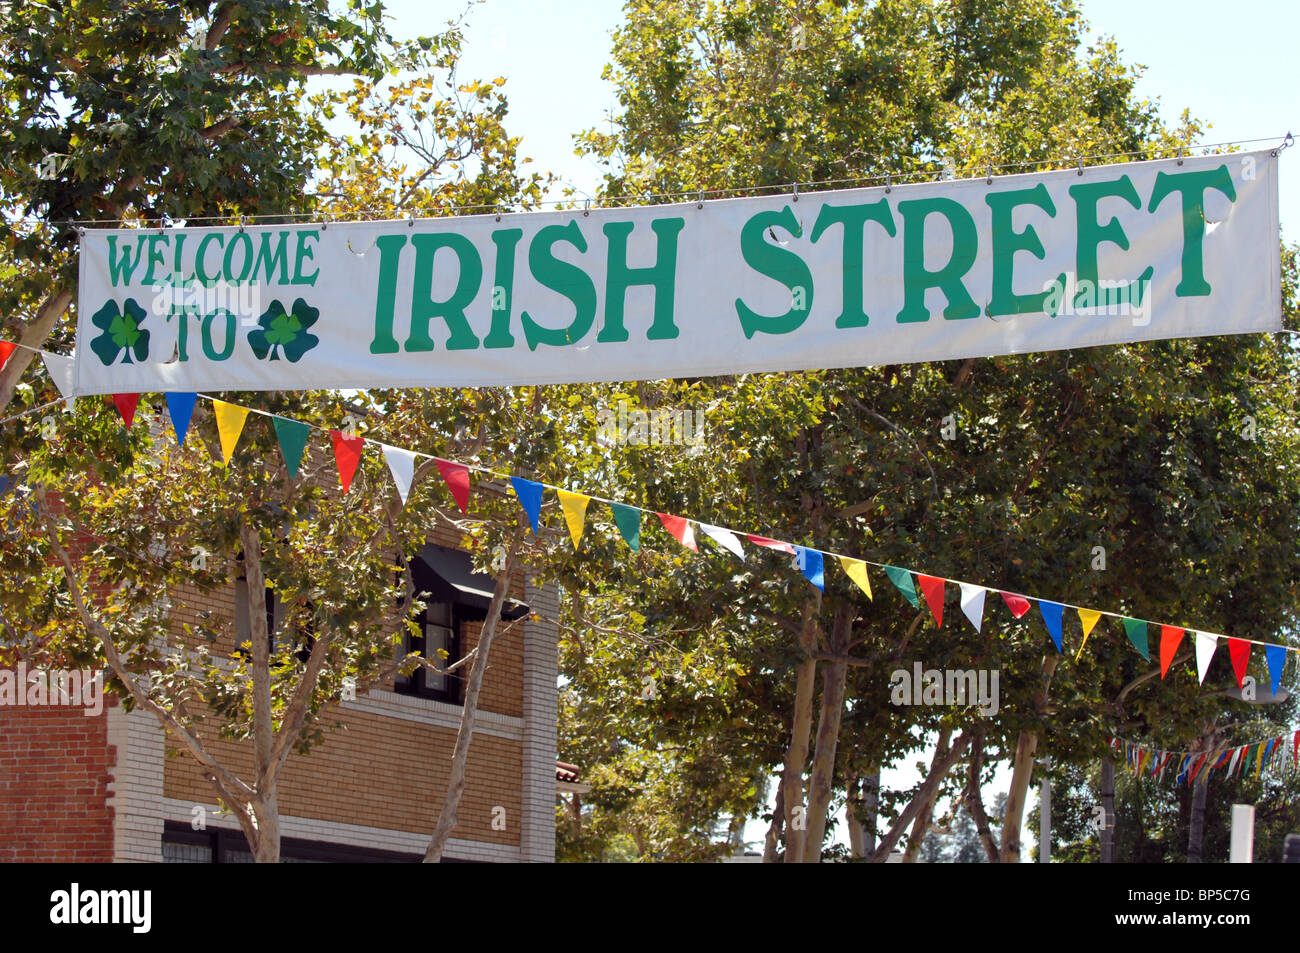 Bienvenido a Irish Street - un banner da la bienvenida a los visitantes a la Feria de la calle internacional en Orange, California. Foto de stock